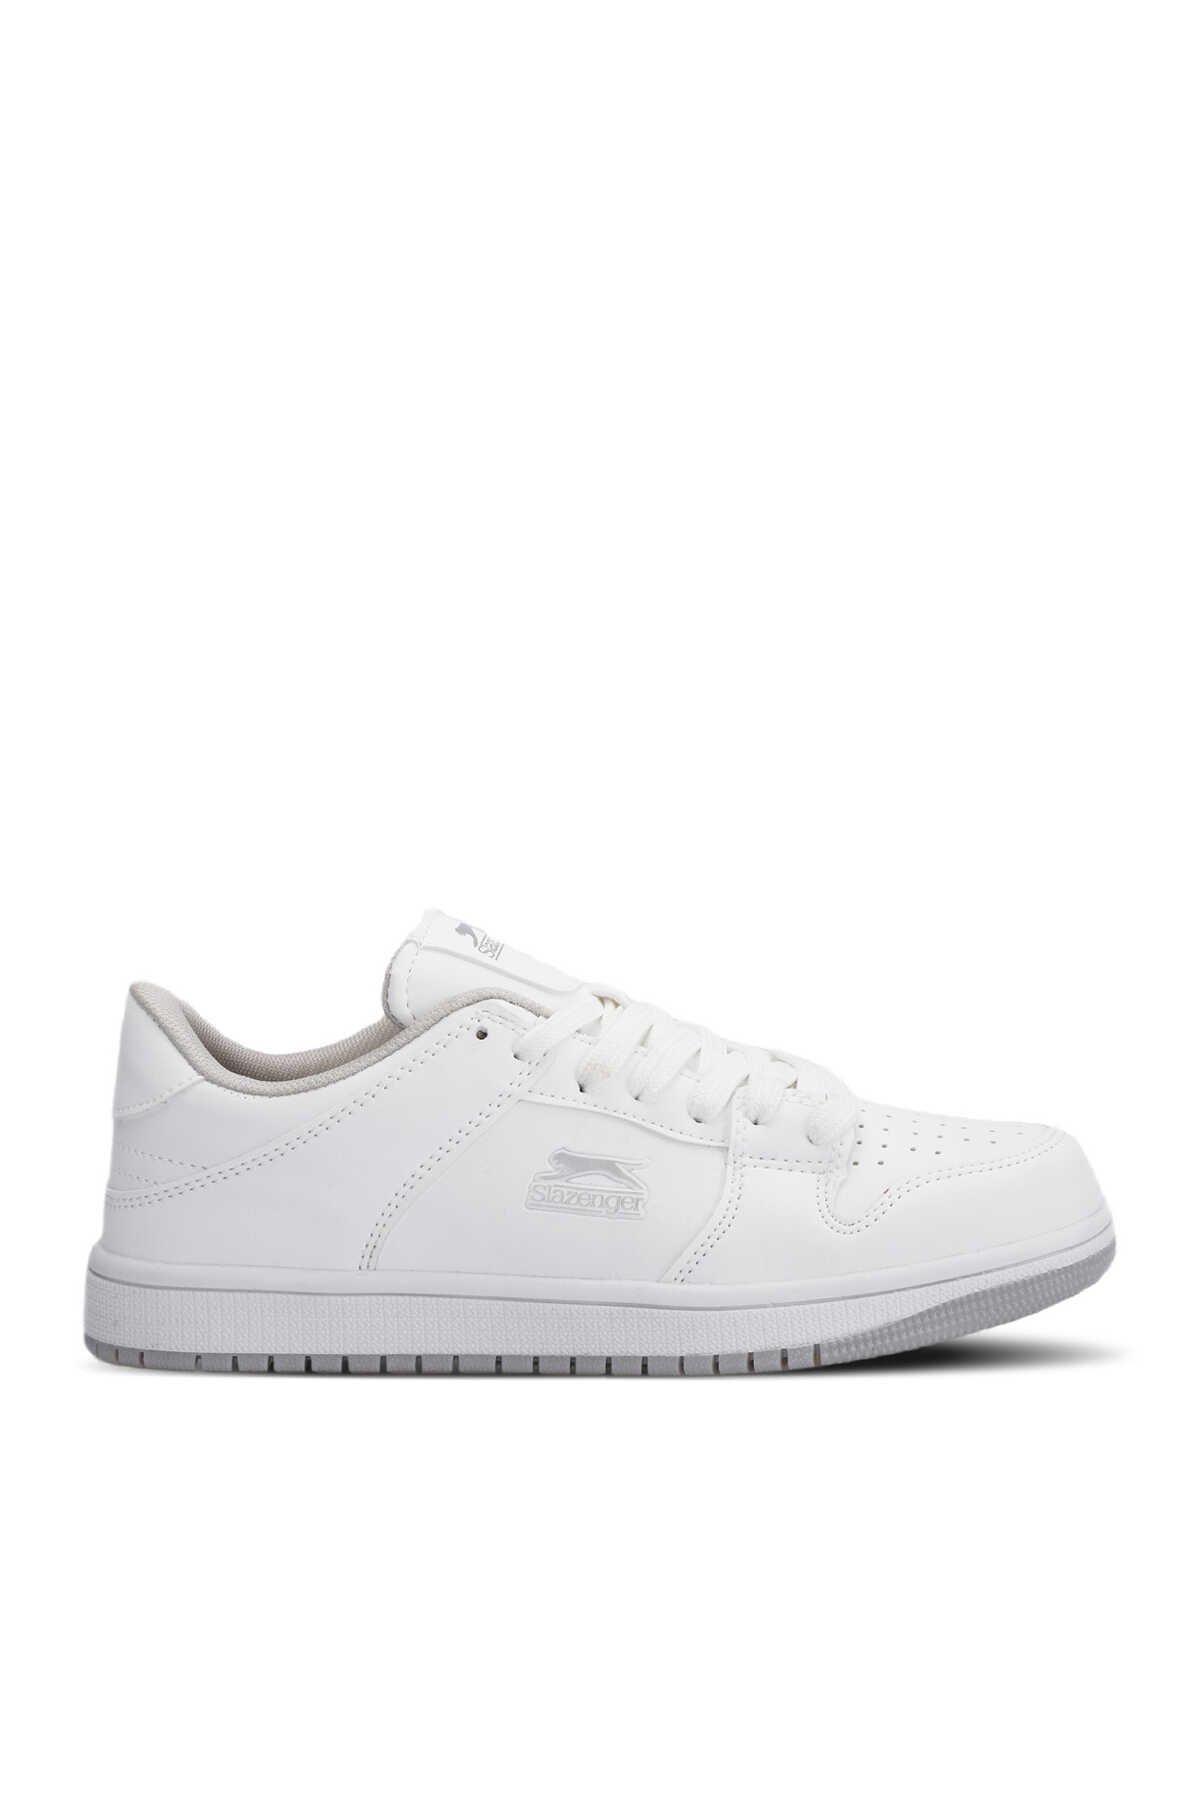 Slazenger - Slazenger LABOR Sneaker Kadın Ayakkabı Beyaz / Beyaz